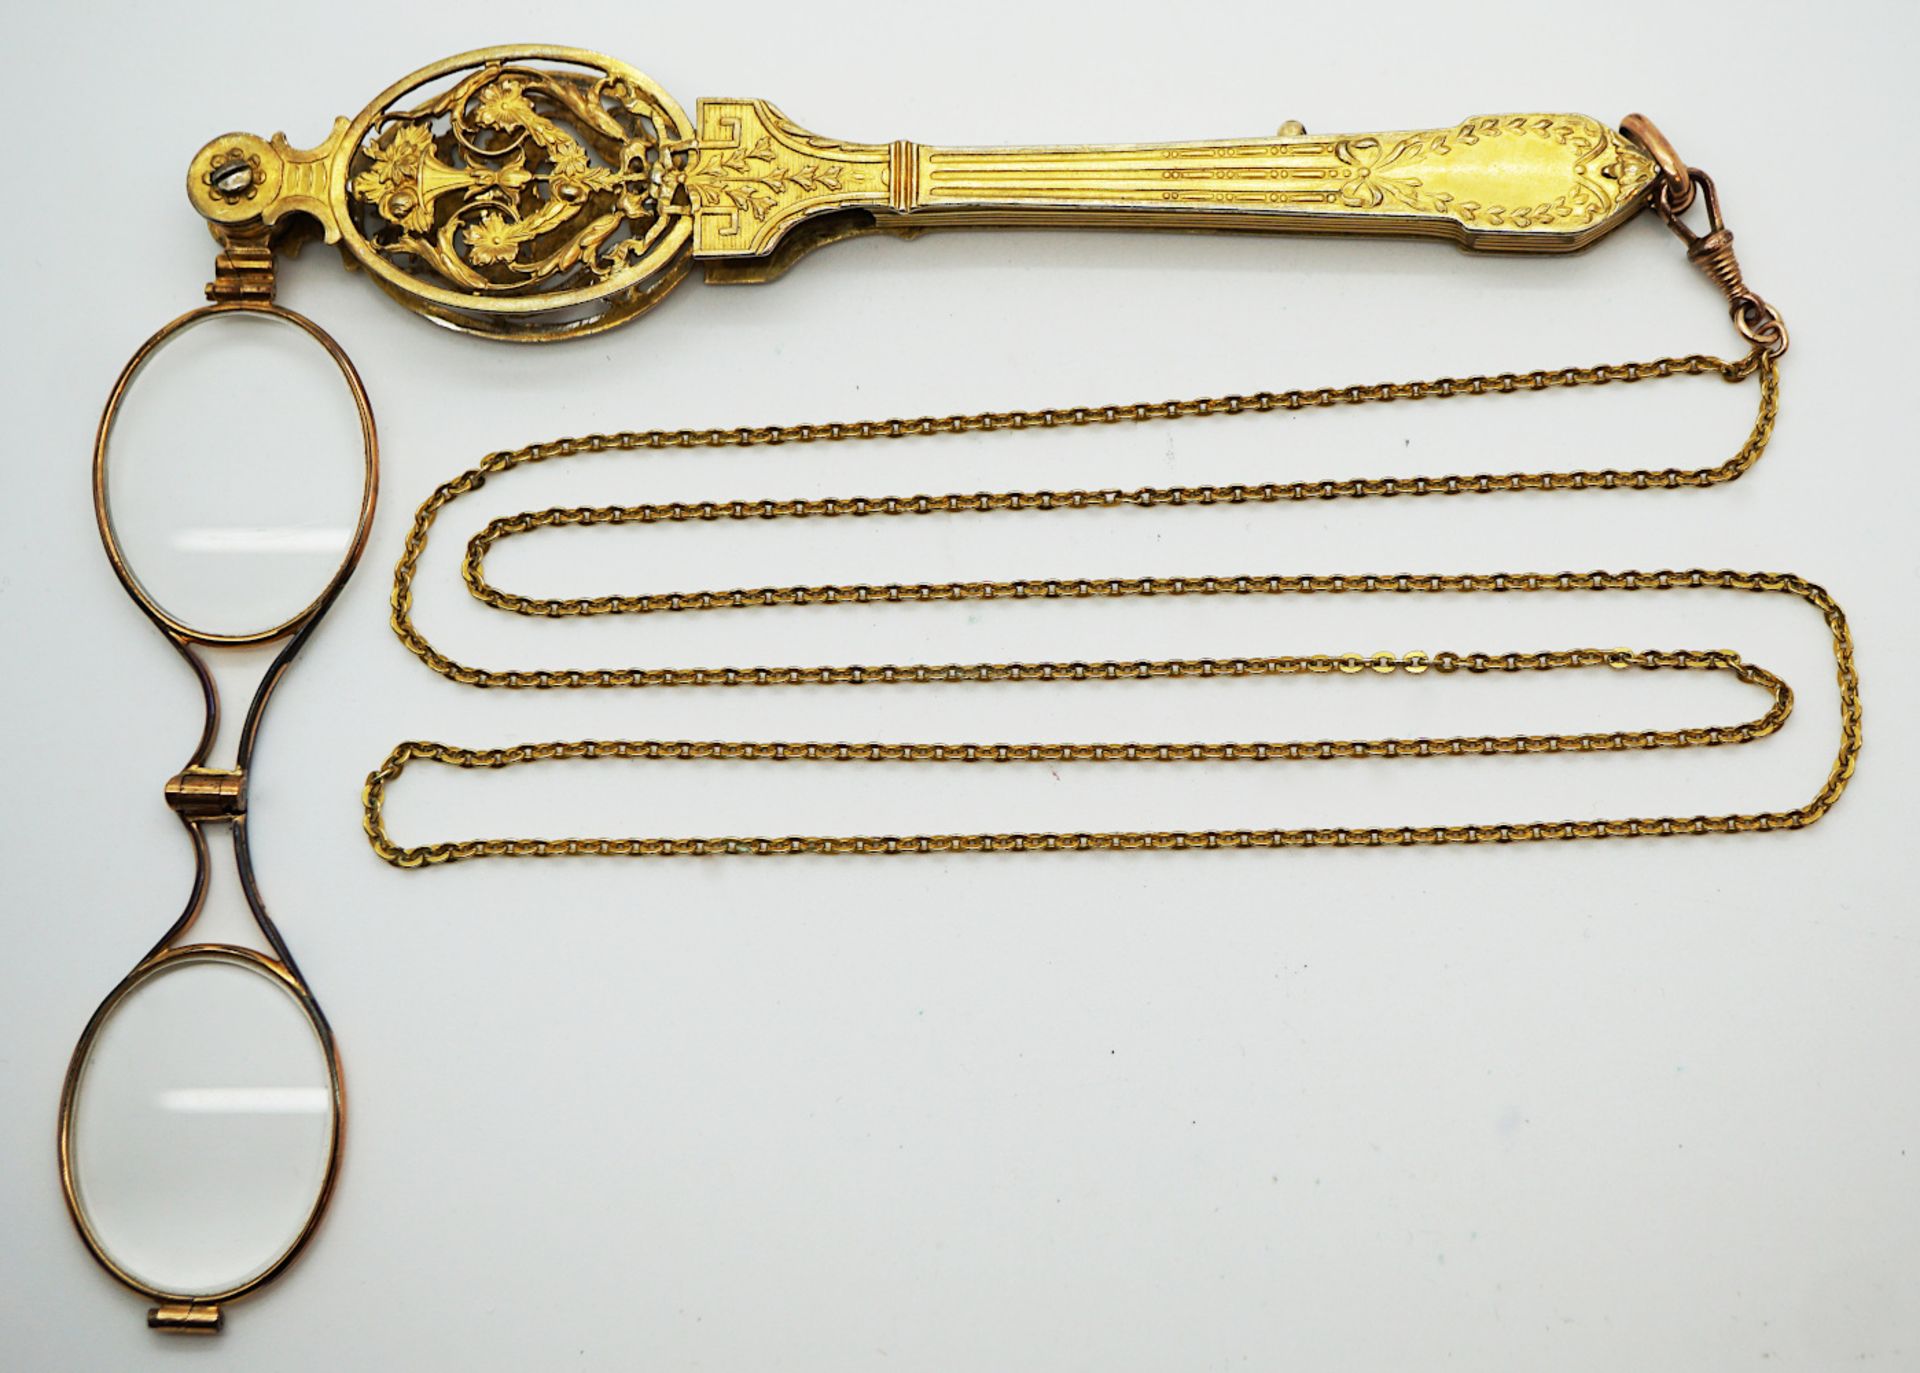 1 Klappbrille Metall verg. wohl Historismus um 1880 m. aufklappbarer Kette